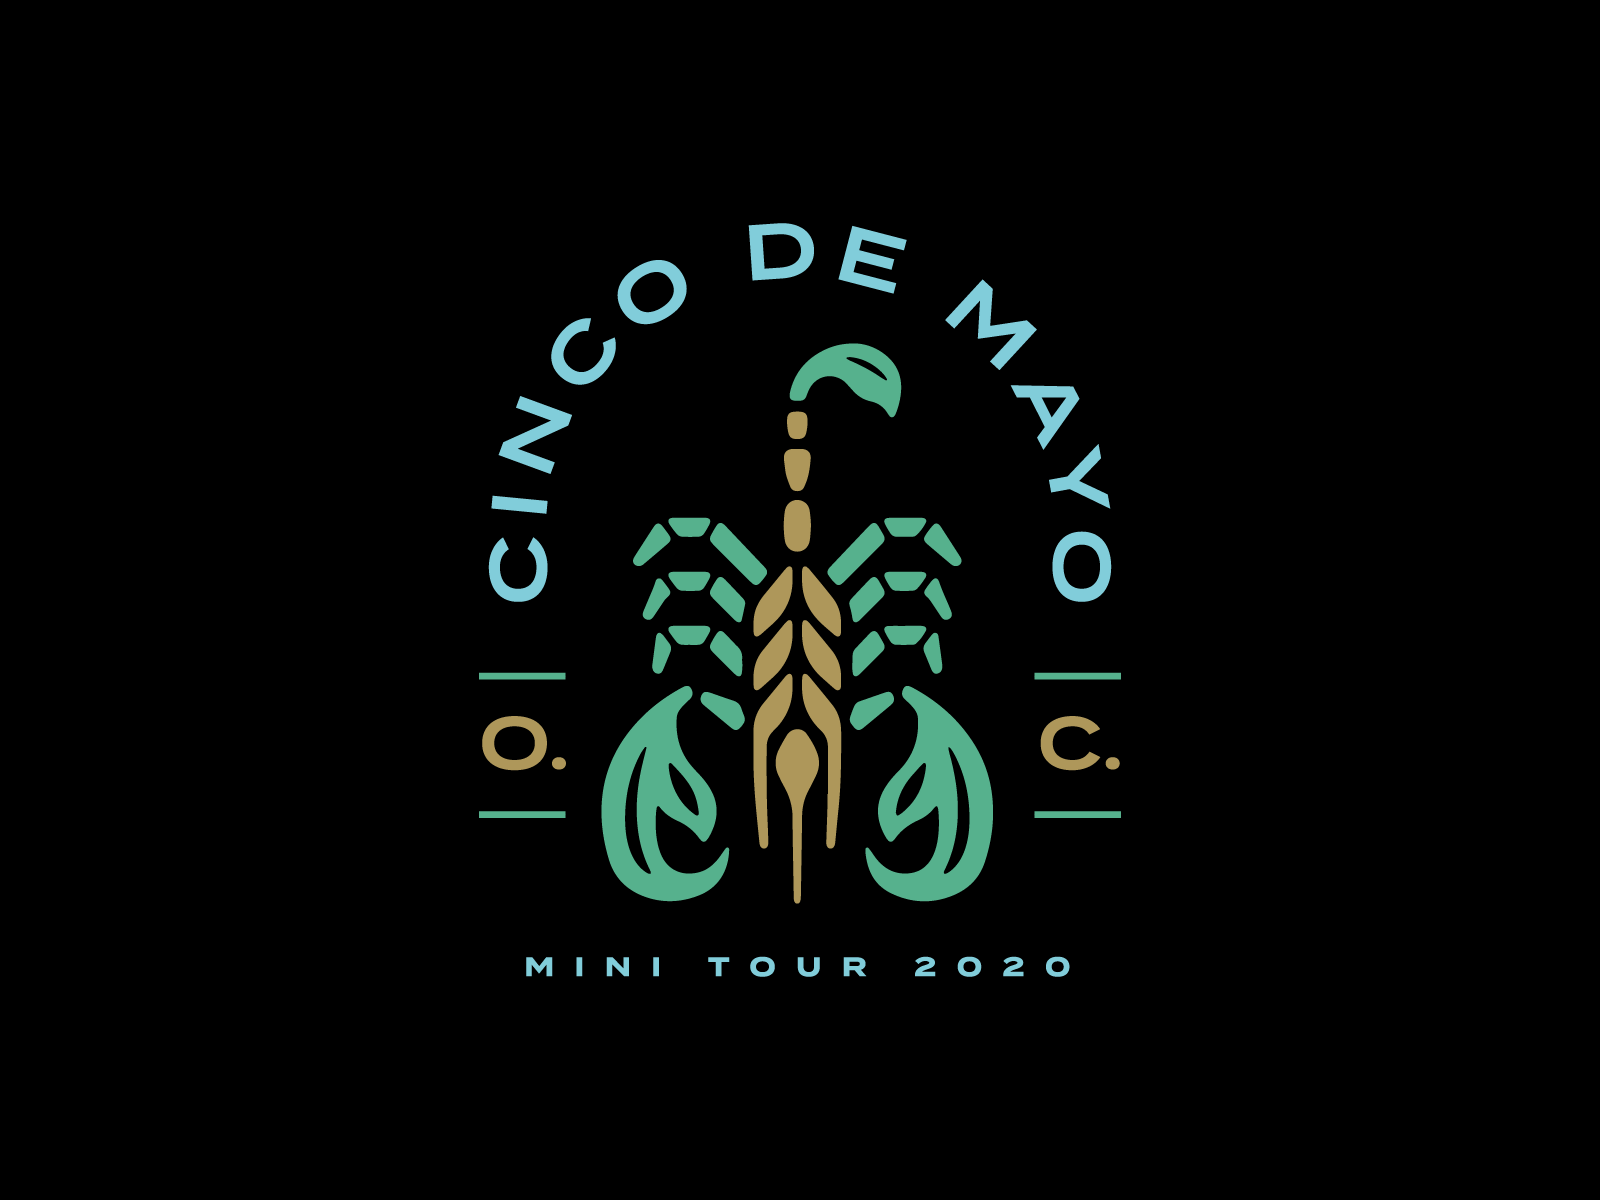 Old Chicago Cinco de Mayo Mini Tour Tee barley beer cinco de mayo illustration mexico scorpion